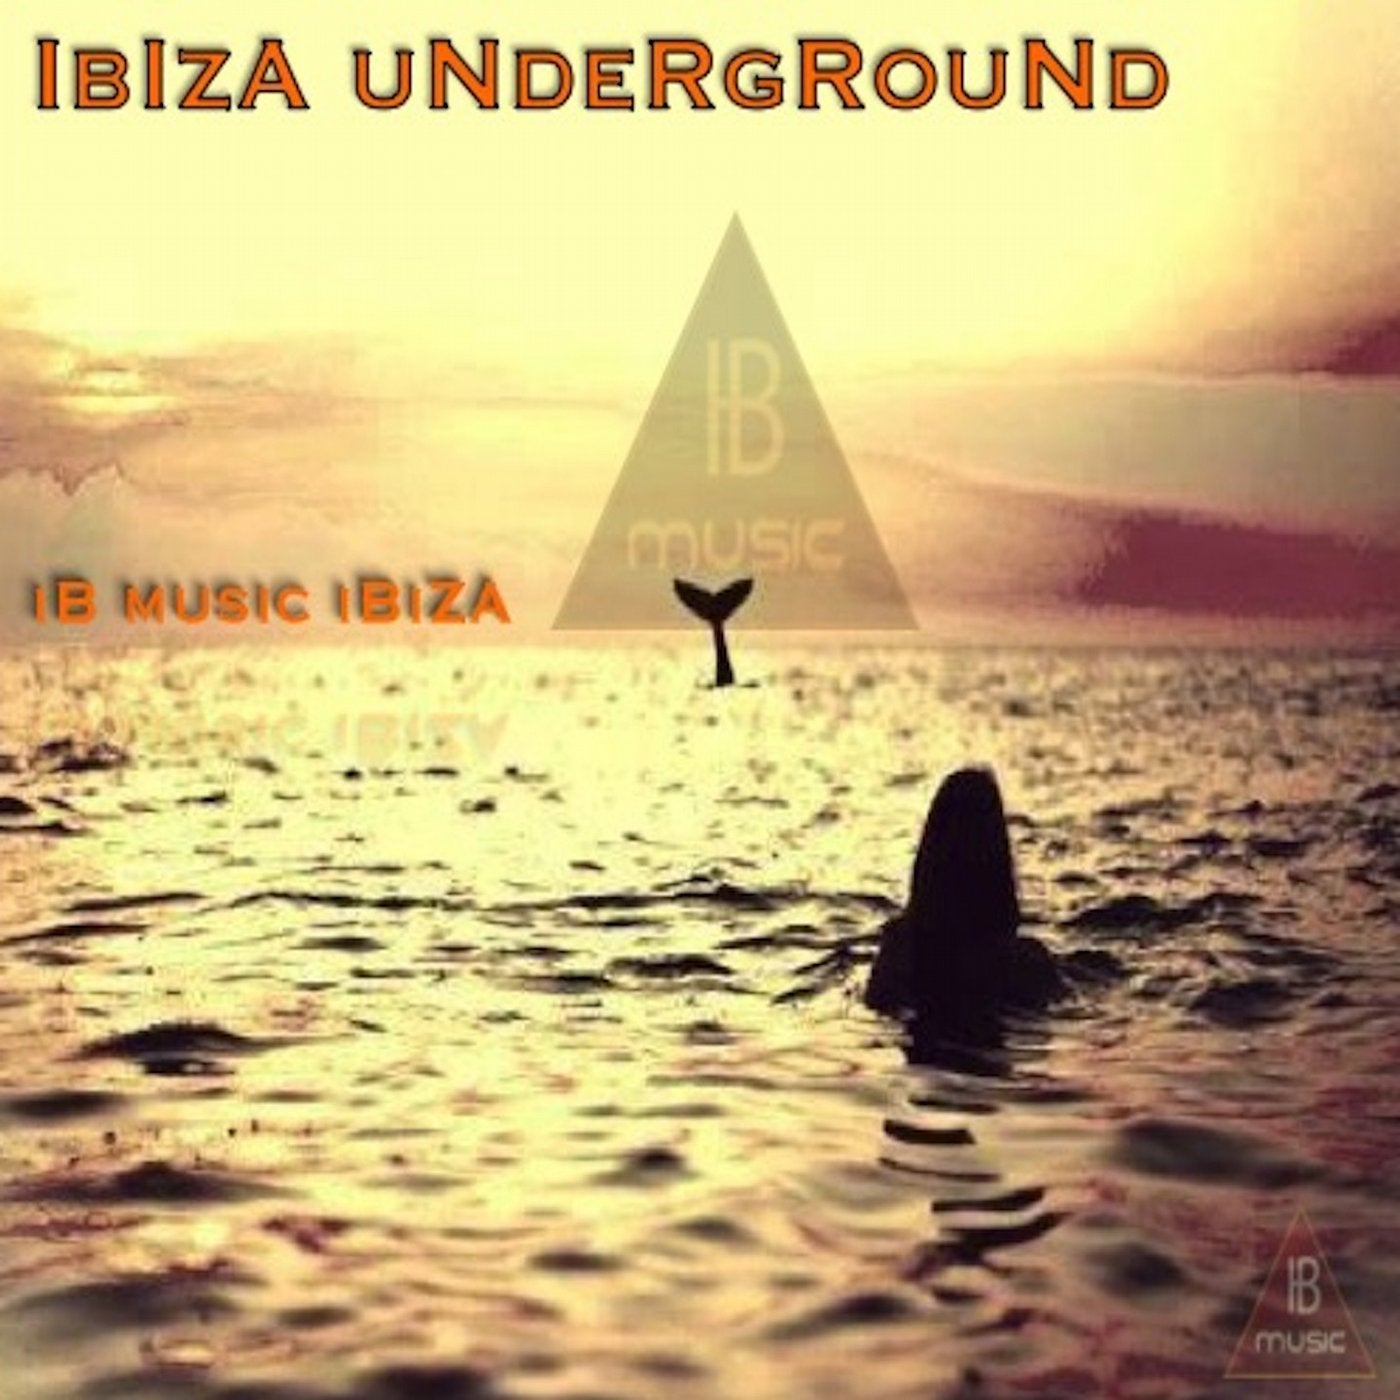 Ibiza Underground (Ib Music IBiza)